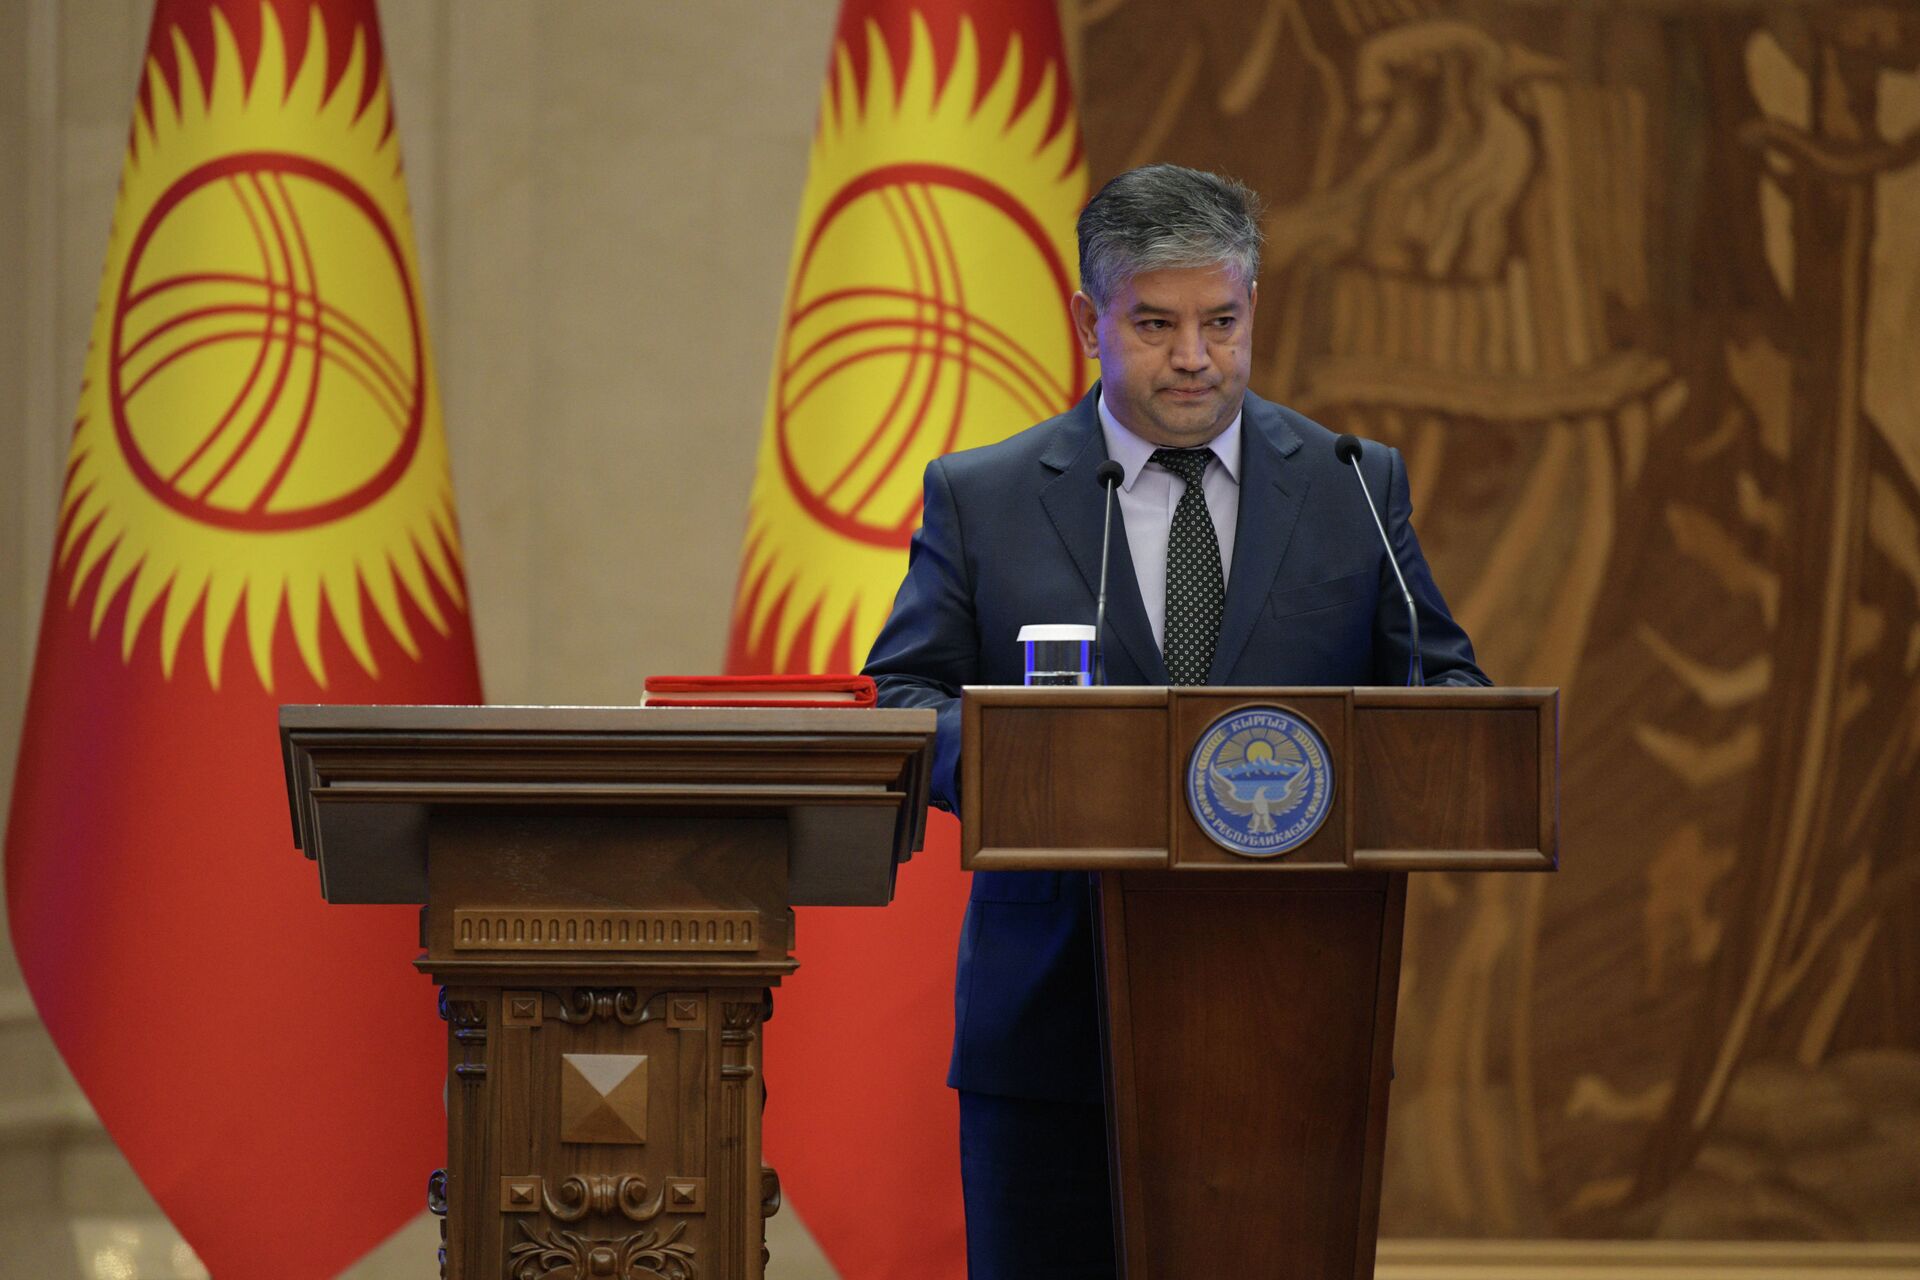 Принесение присяги членами правительства в госрезиденции Ала-Арча - Sputnik Кыргызстан, 1920, 14.12.2021